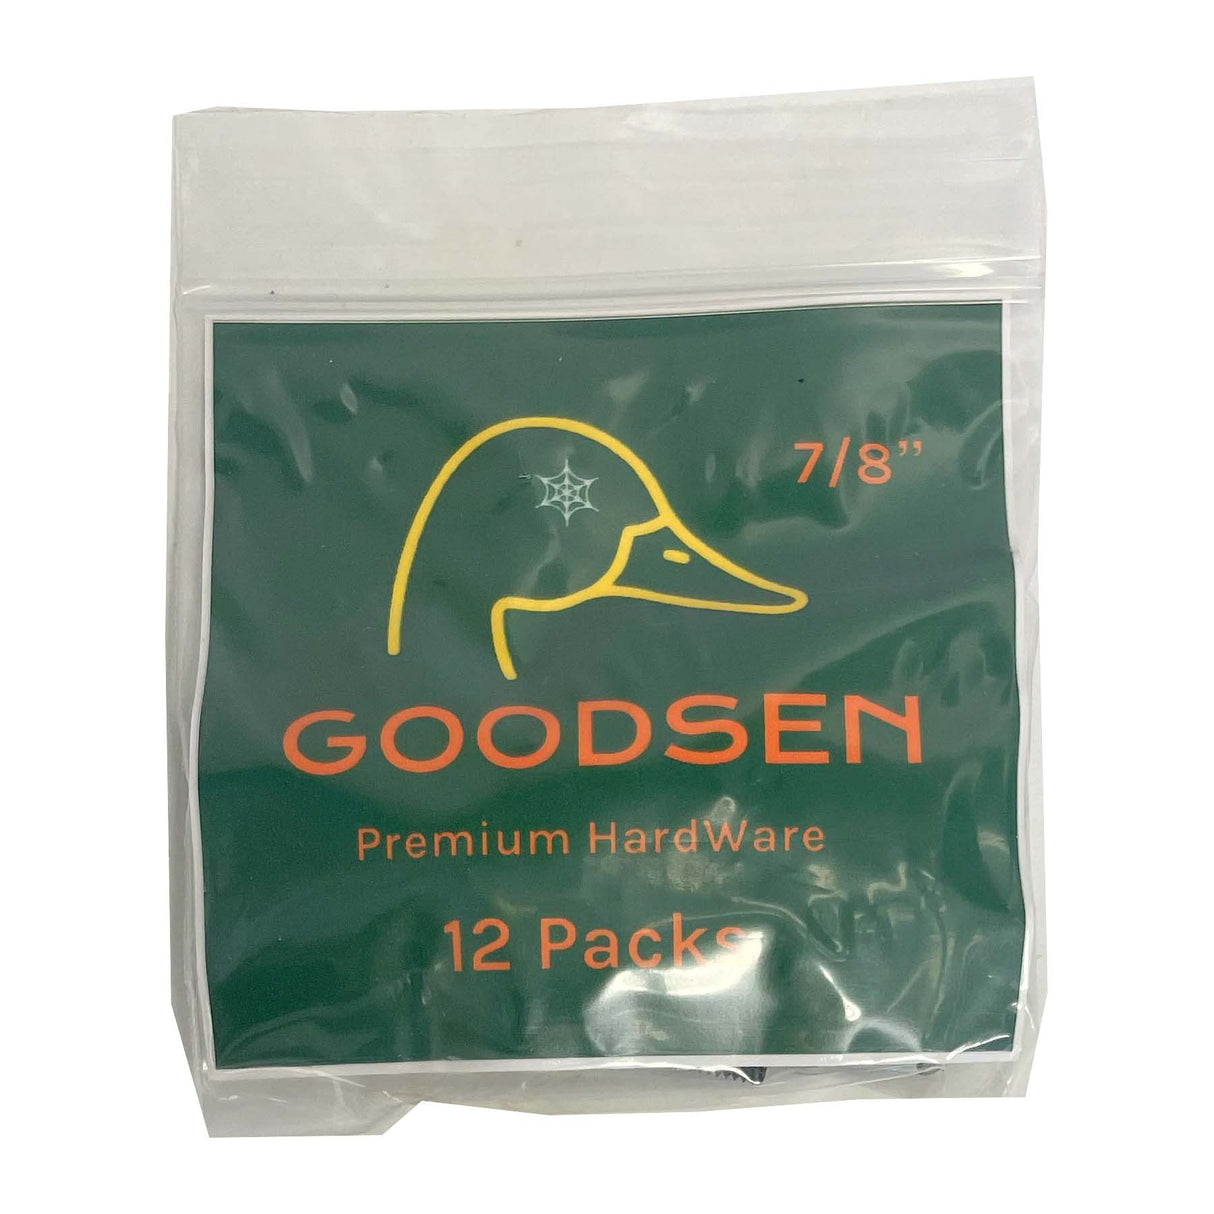 Goodsen 12 Pack 7/8" Phillips Hardware